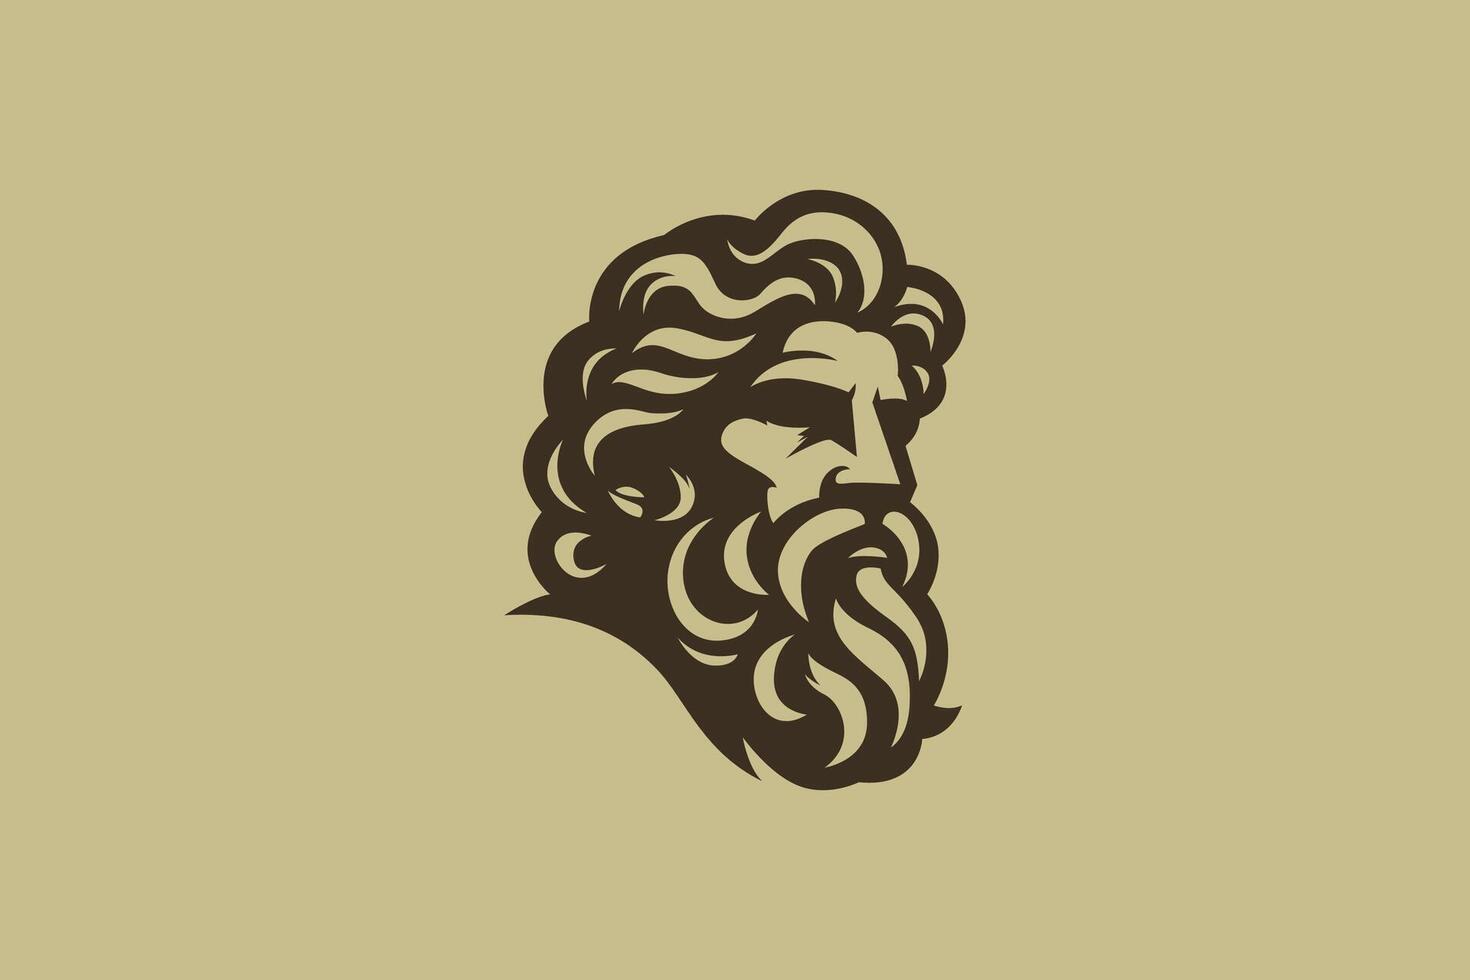 Kopf Gesicht mit Bart Illustration Zeus Logo Zeichen Symbol griechisch Mythologie Geschäft männlich Marke Identität vektor